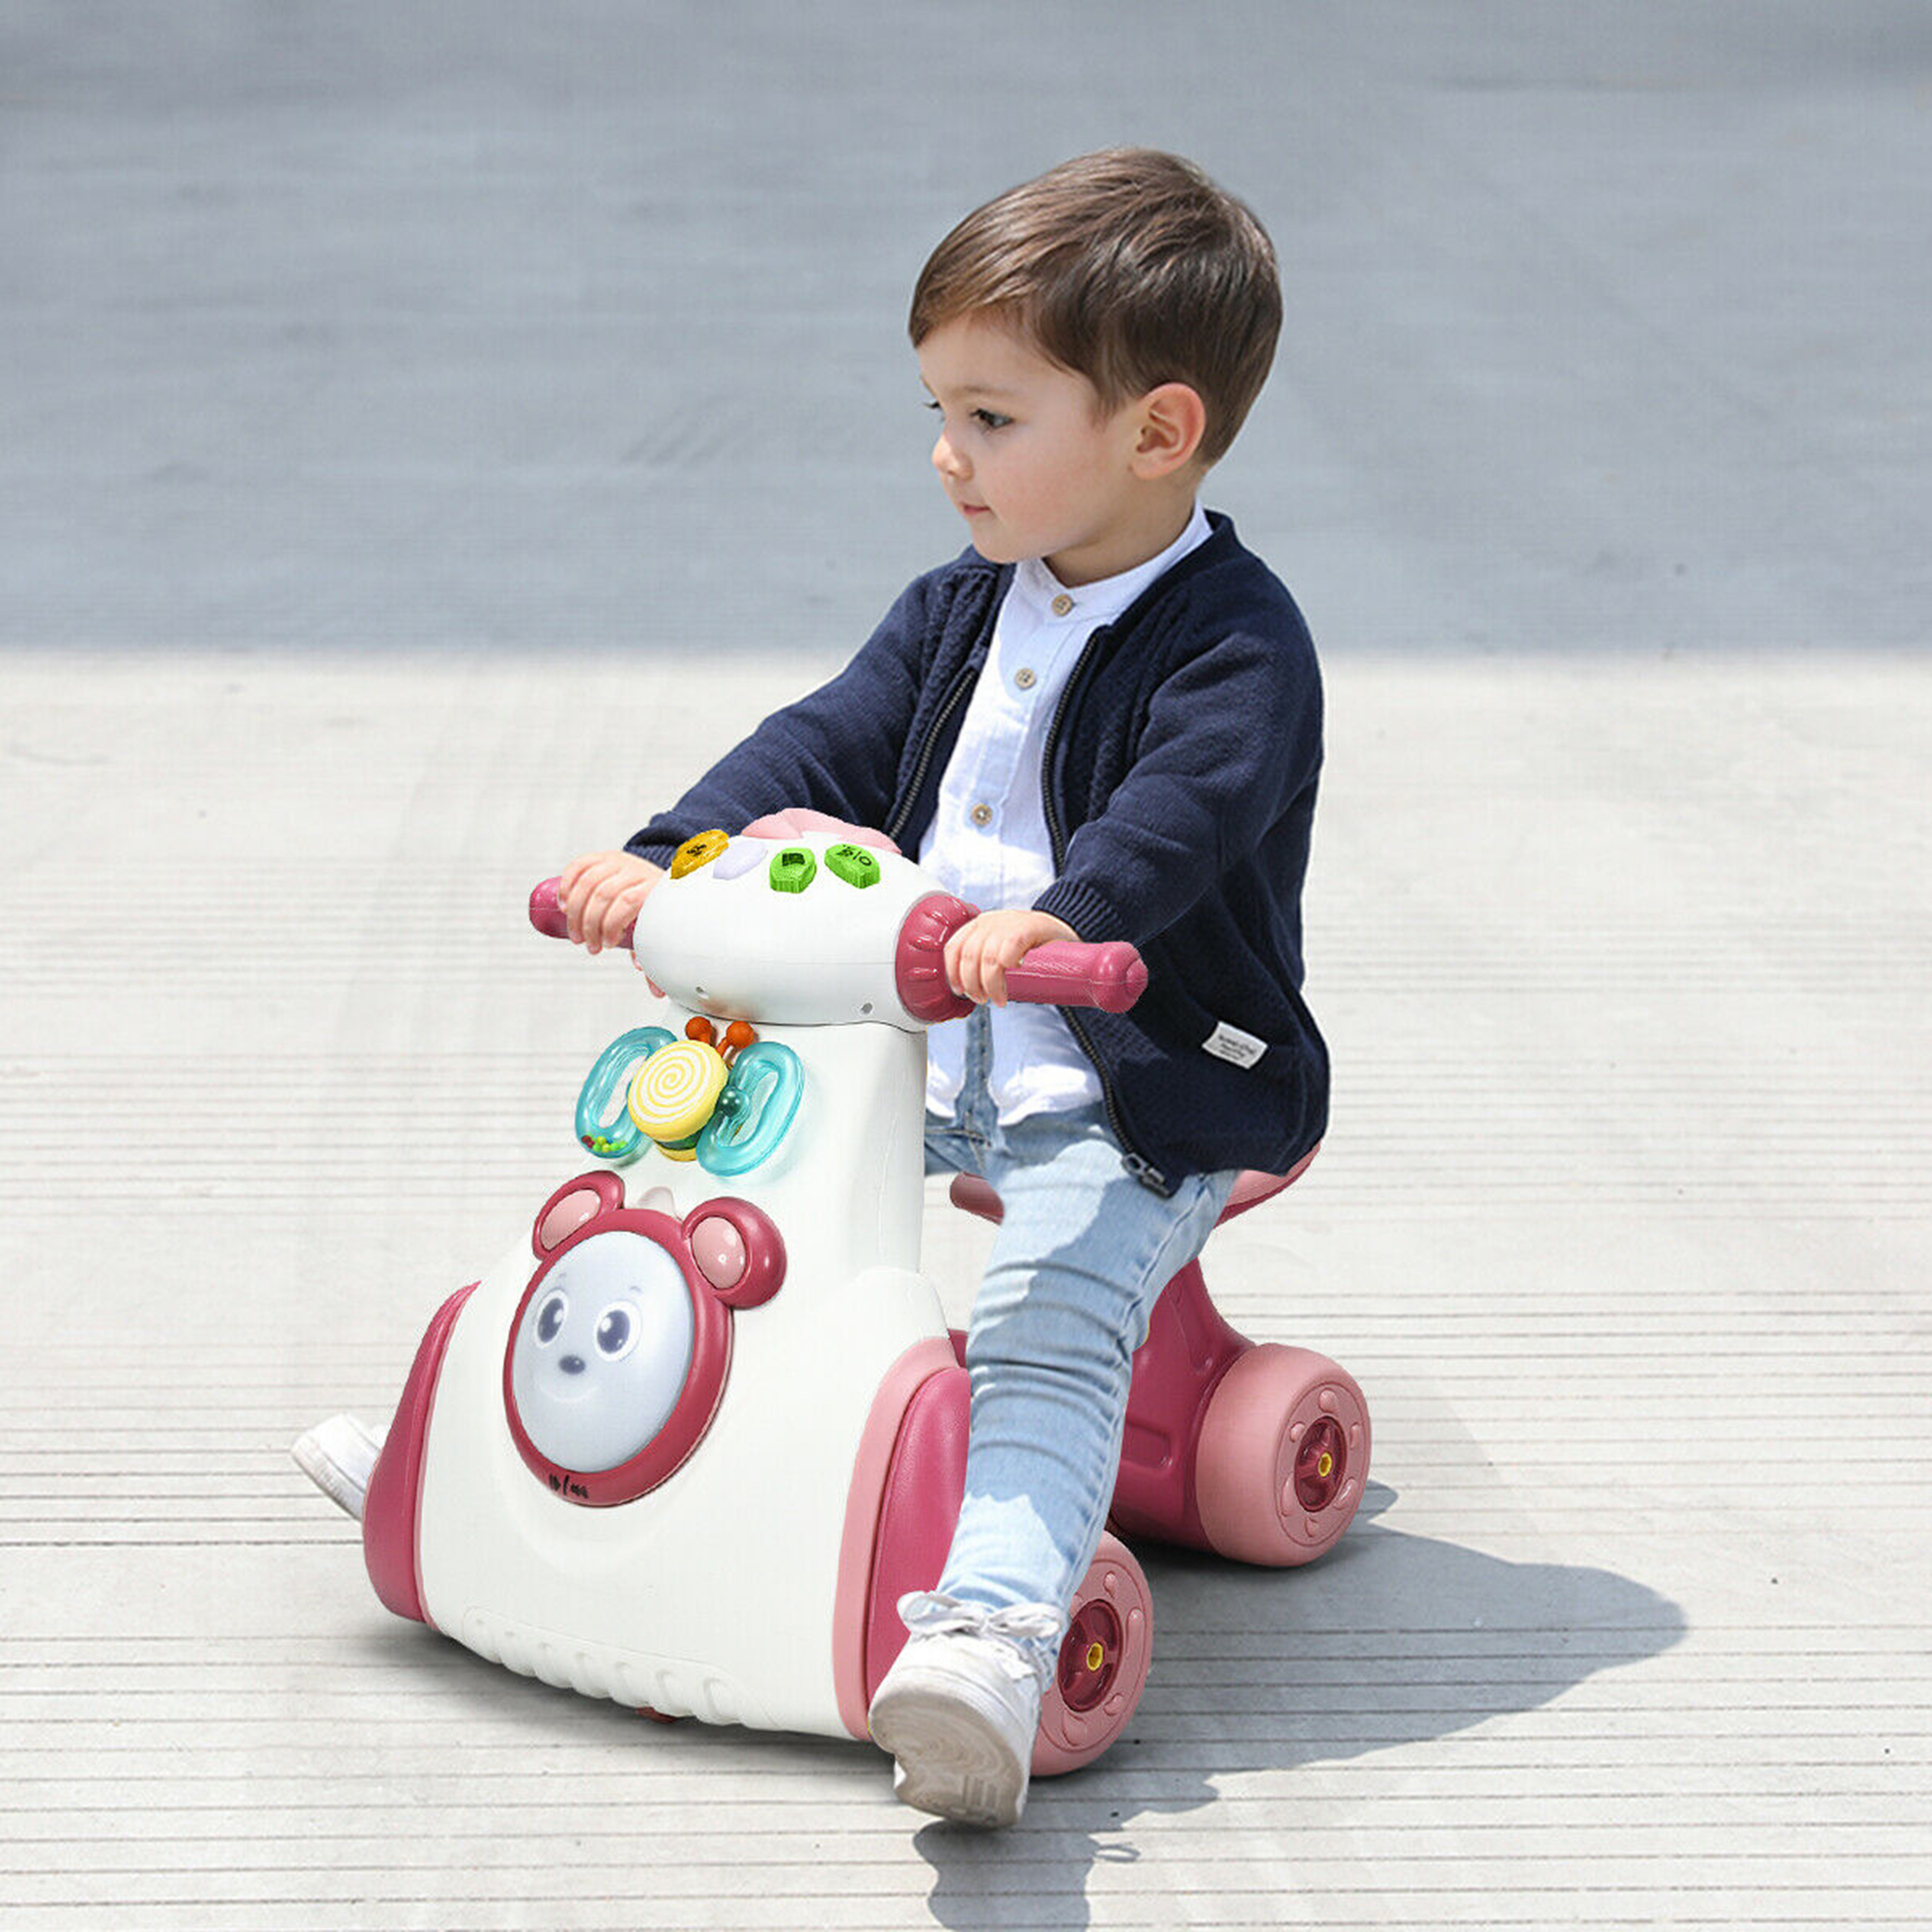 Gymax Baby Balance Bike Musical Ride Toy w/ Sensing Function & Light Toddler Walker - image 4 of 10